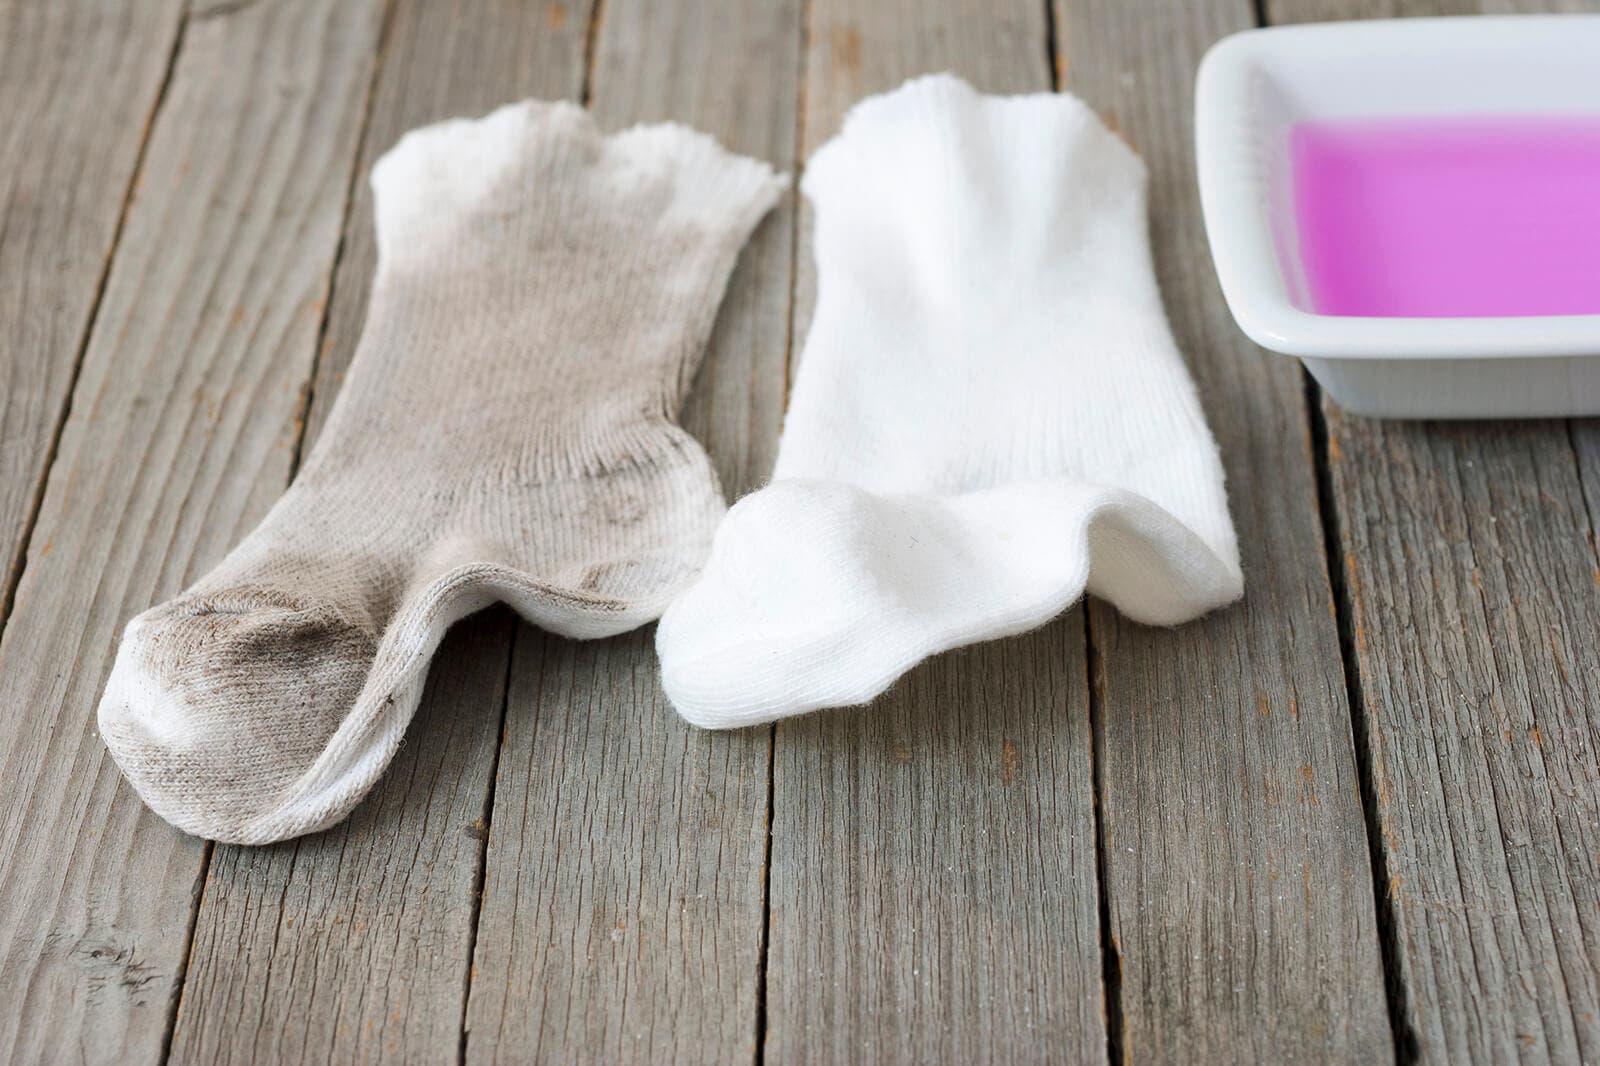 Comparación de calcetines sucios y calcetines limpios